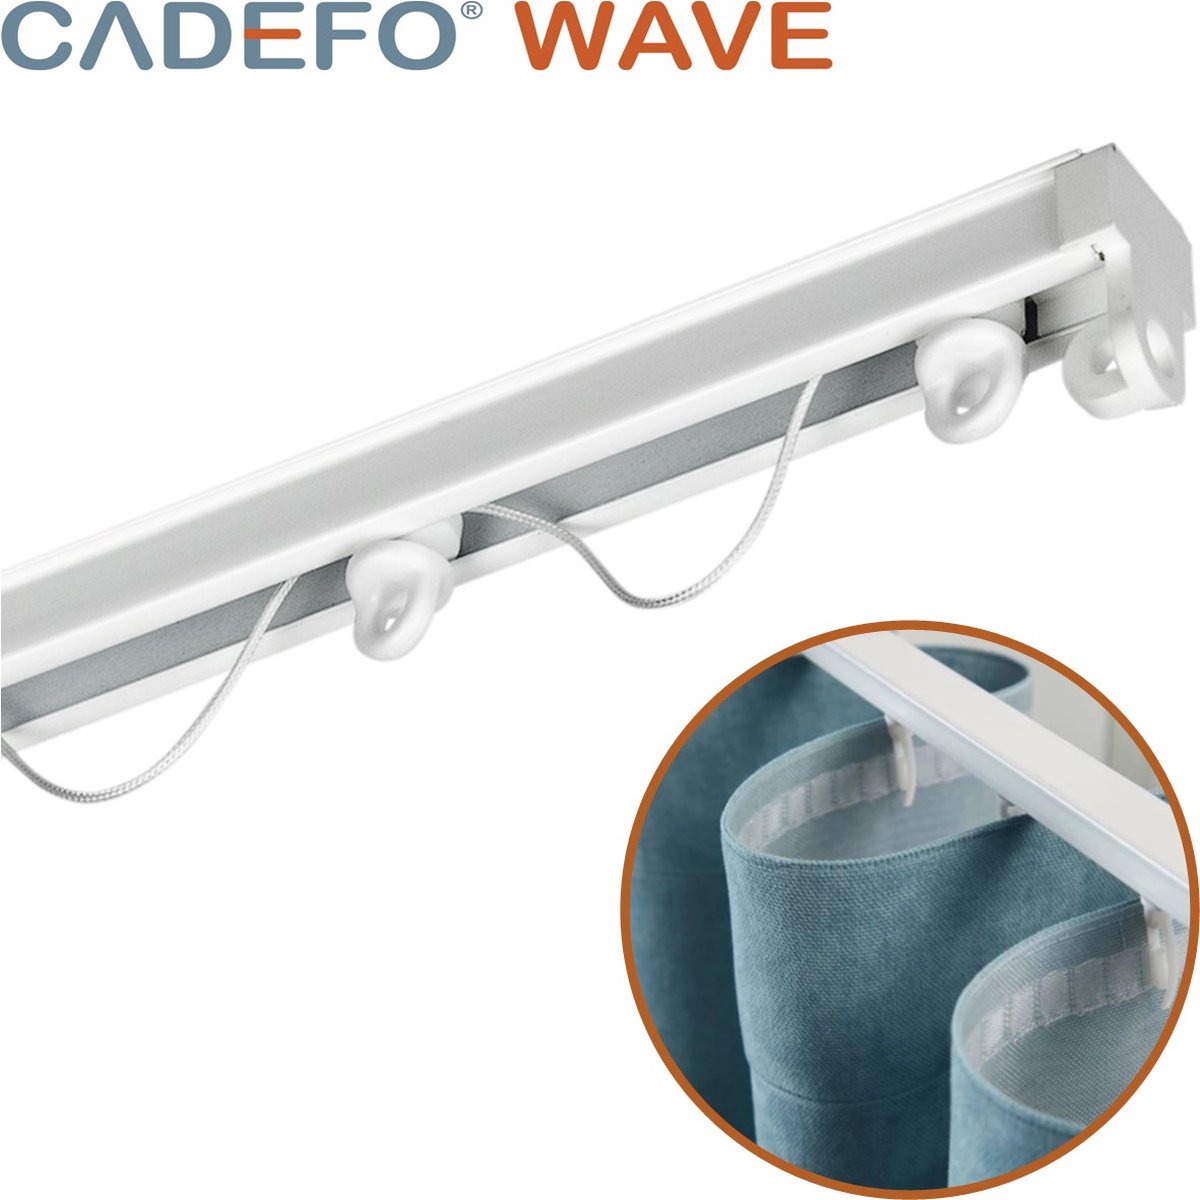 CADEFO WAVE (551 - 600 cm) Gordijnrails - Compleet op maat! - UIT 1 STUK - Leverbaar tot 6 meter - Plafondbevestiging - Lengte 591 cm